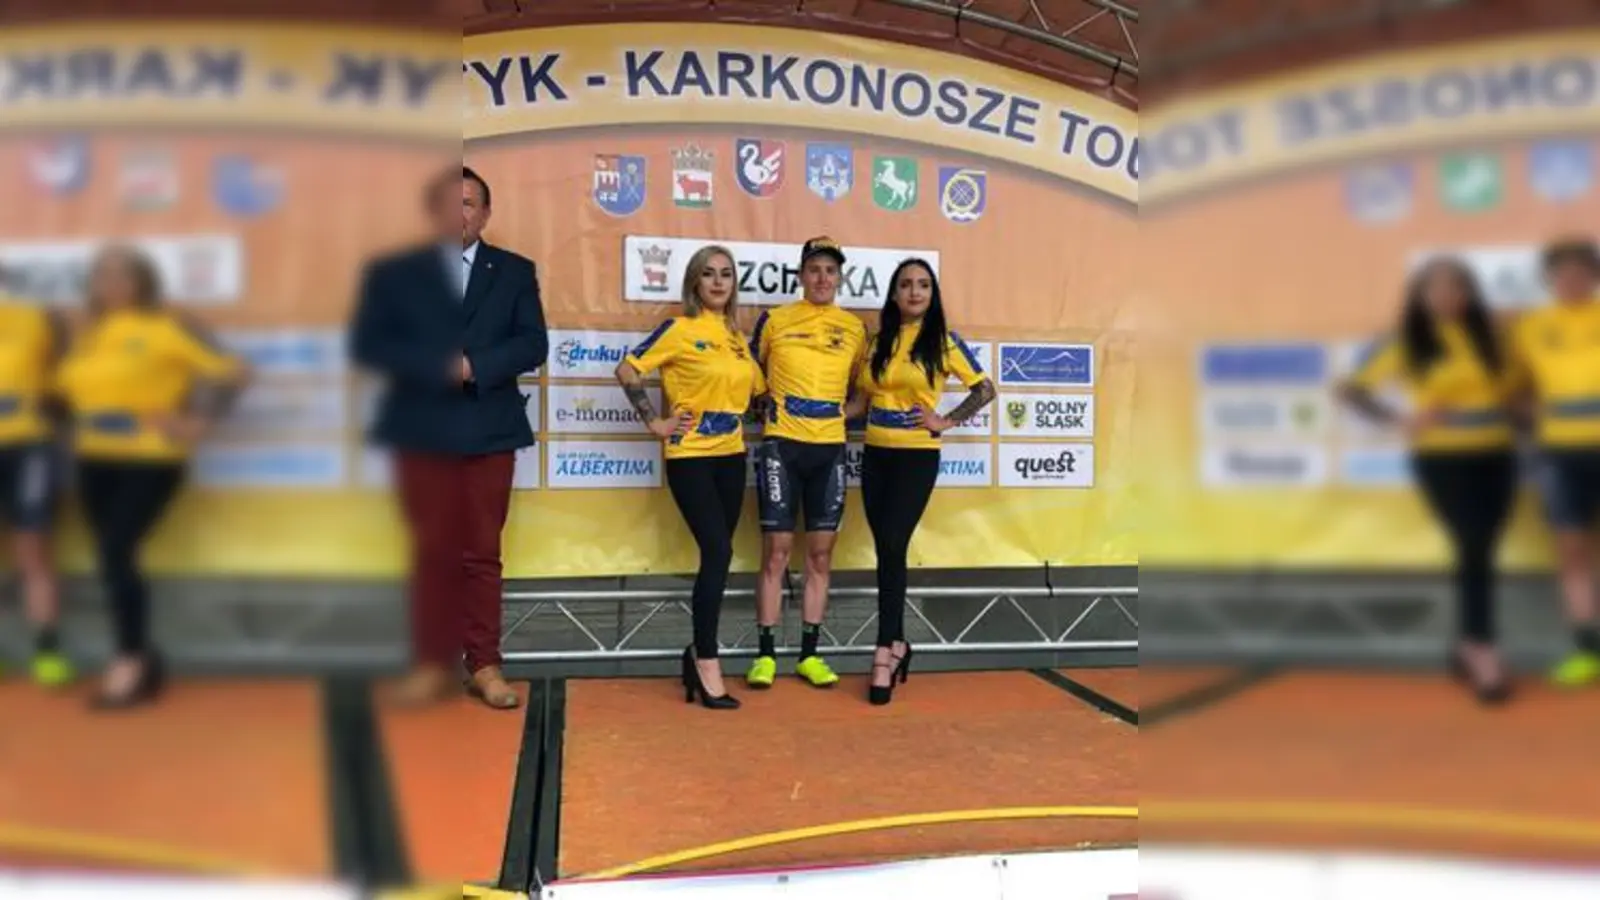 Nach seinem Sieg   bei der ersten Etappe der Baltyk-Karkonosze Tour trägt Fabian Schormair selbstverständlich auch das gelbe Trikot des Führenden in der Gesamtwertung.	Foto: Florian Monreal (Foto: Florian Monreal)